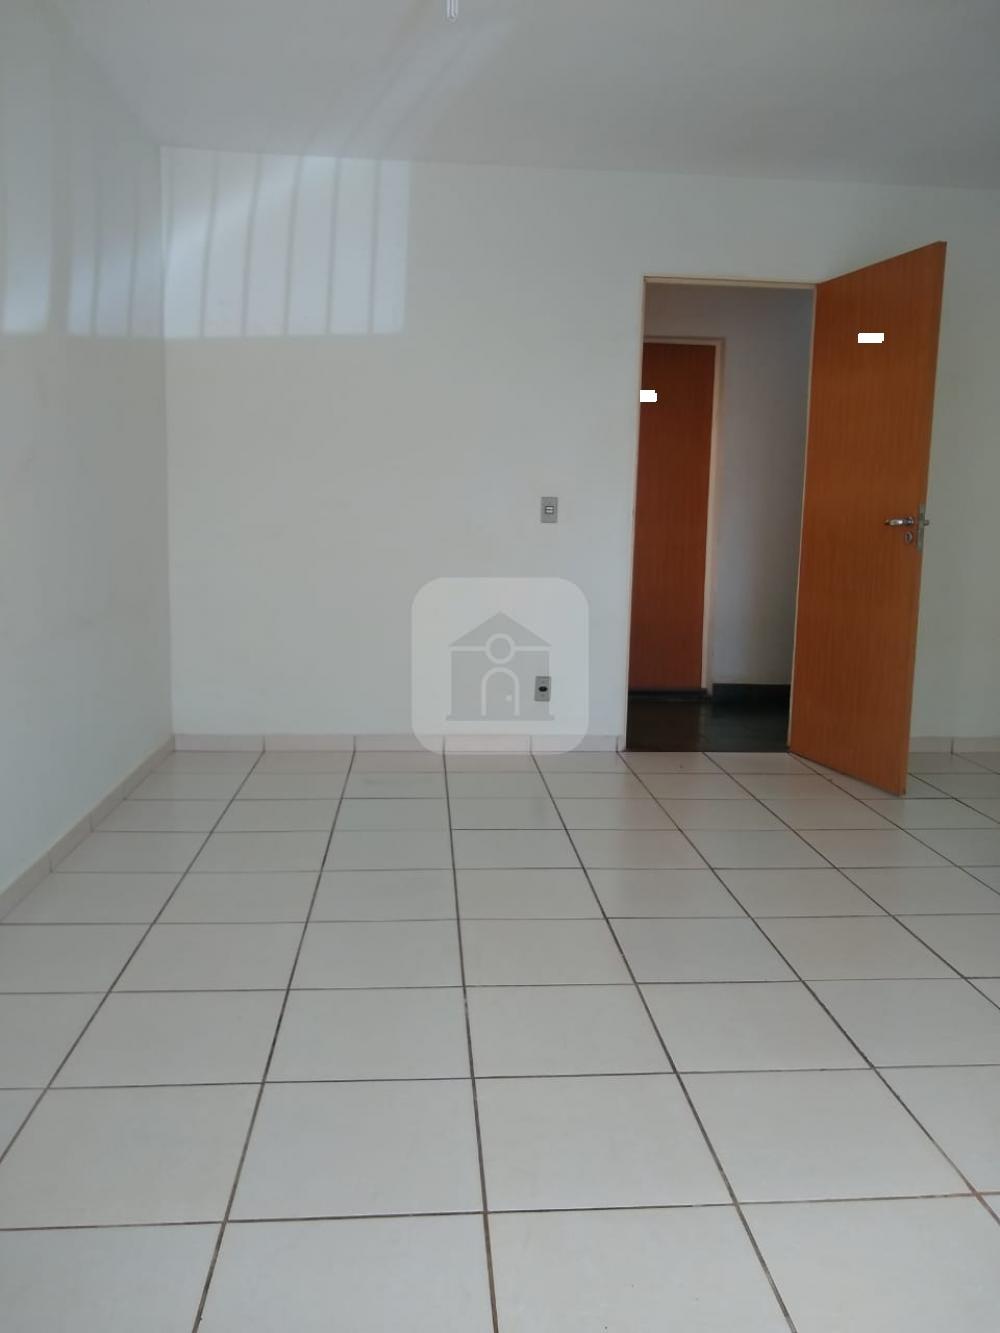 Comprar Apartamento / Loft em Uberlandia R$ 80.000,00 - Foto 14